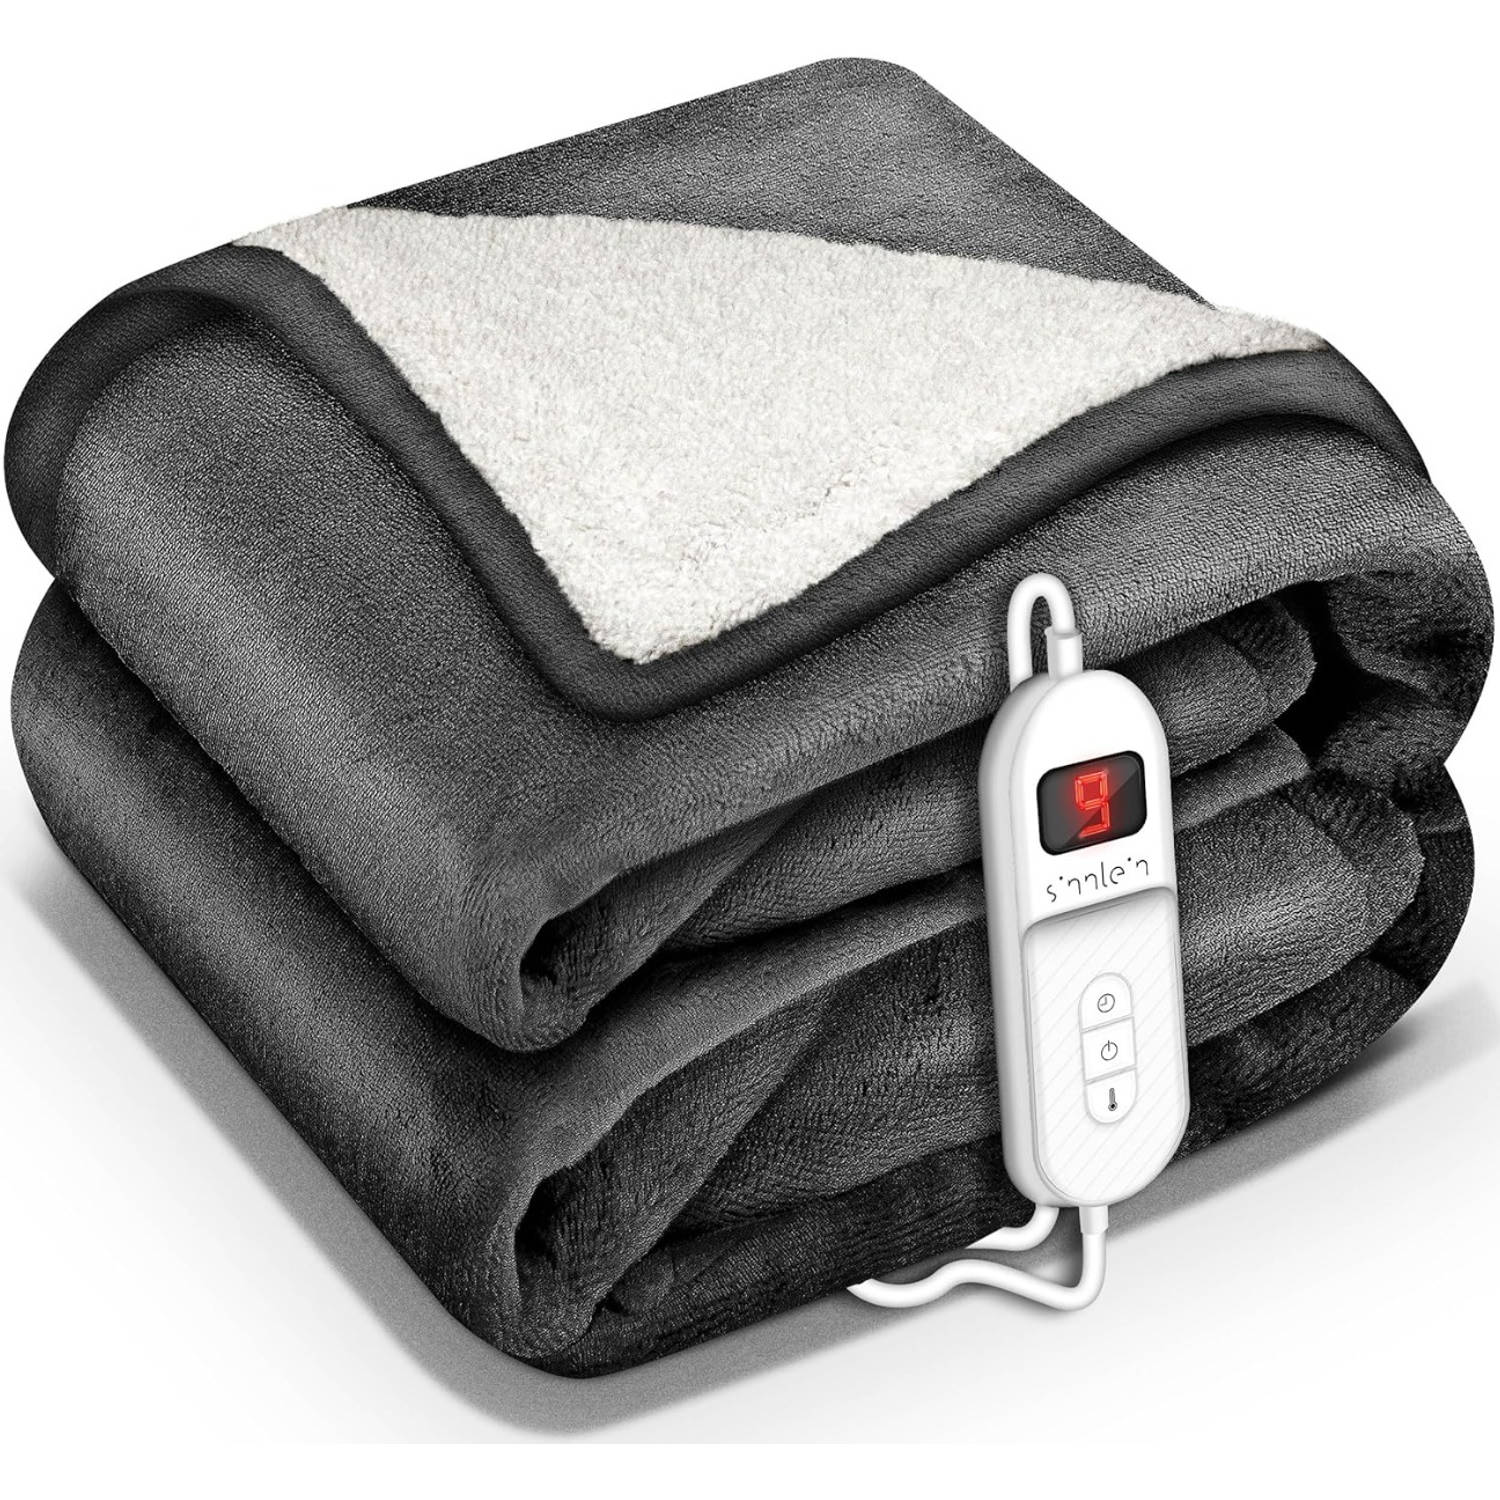 Sinnlein- Elektrische deken met automatische uitschakeling, antraciet, 160x120 cm, warmtedeken met 9 temperatuurniveaus, knuffeldeken, wasbaar